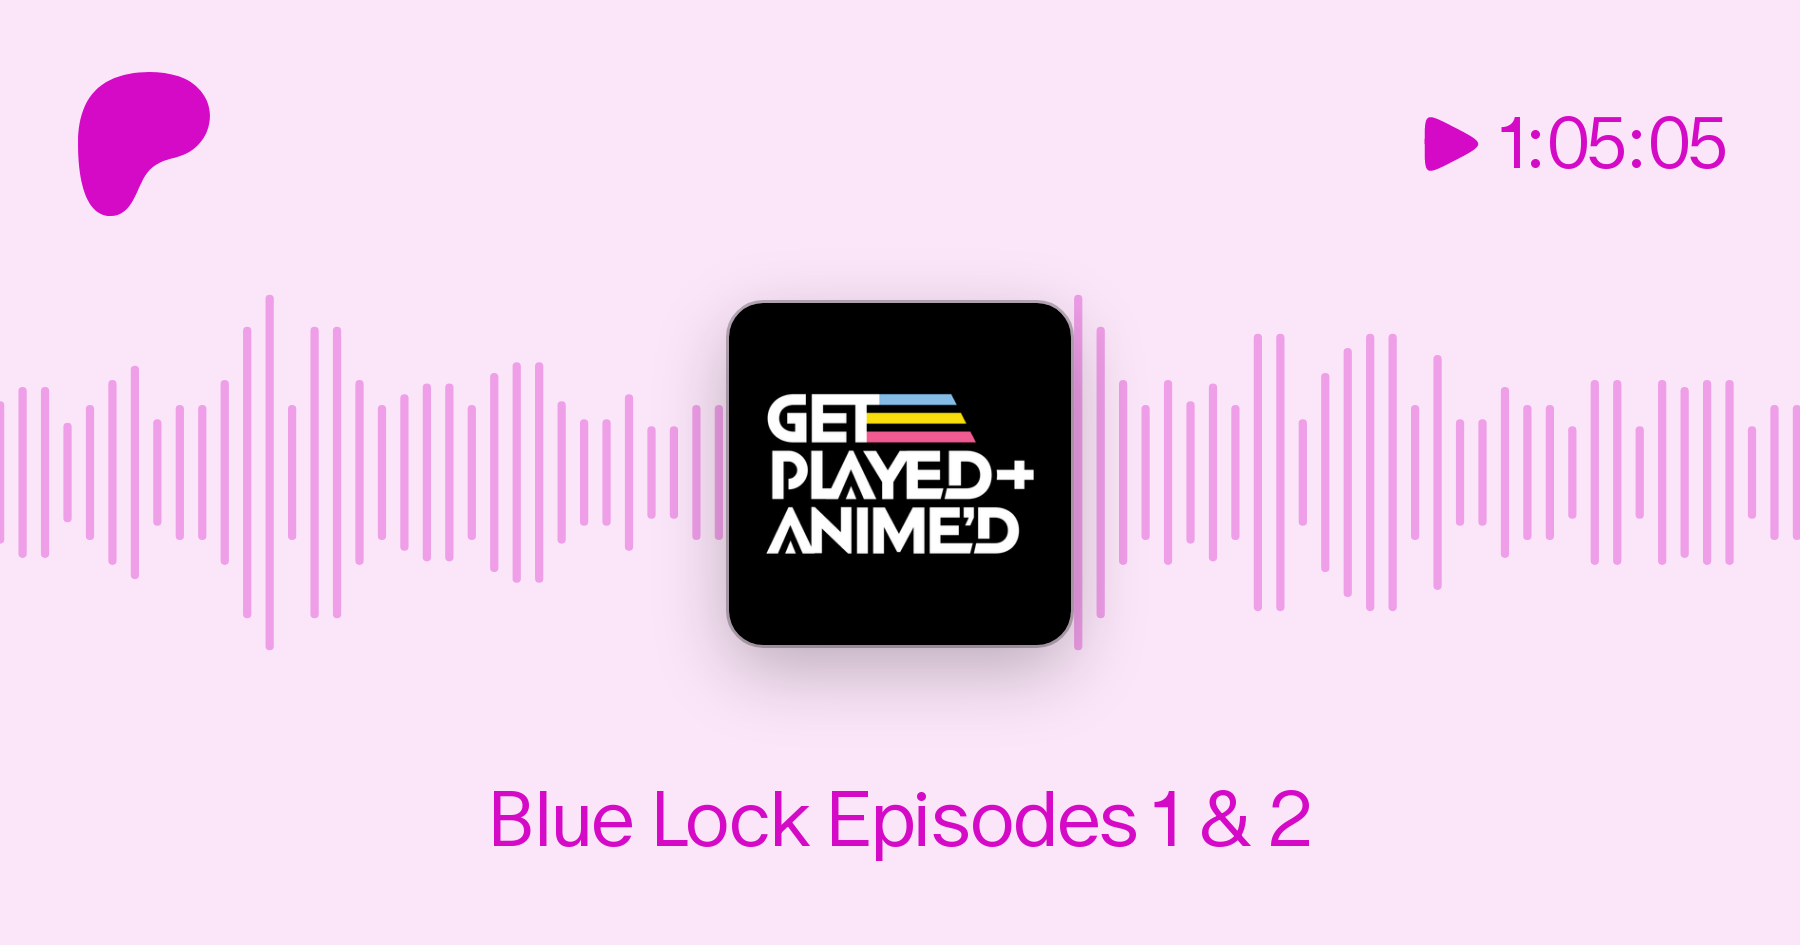 Blue Lock Episodes 1 & 2